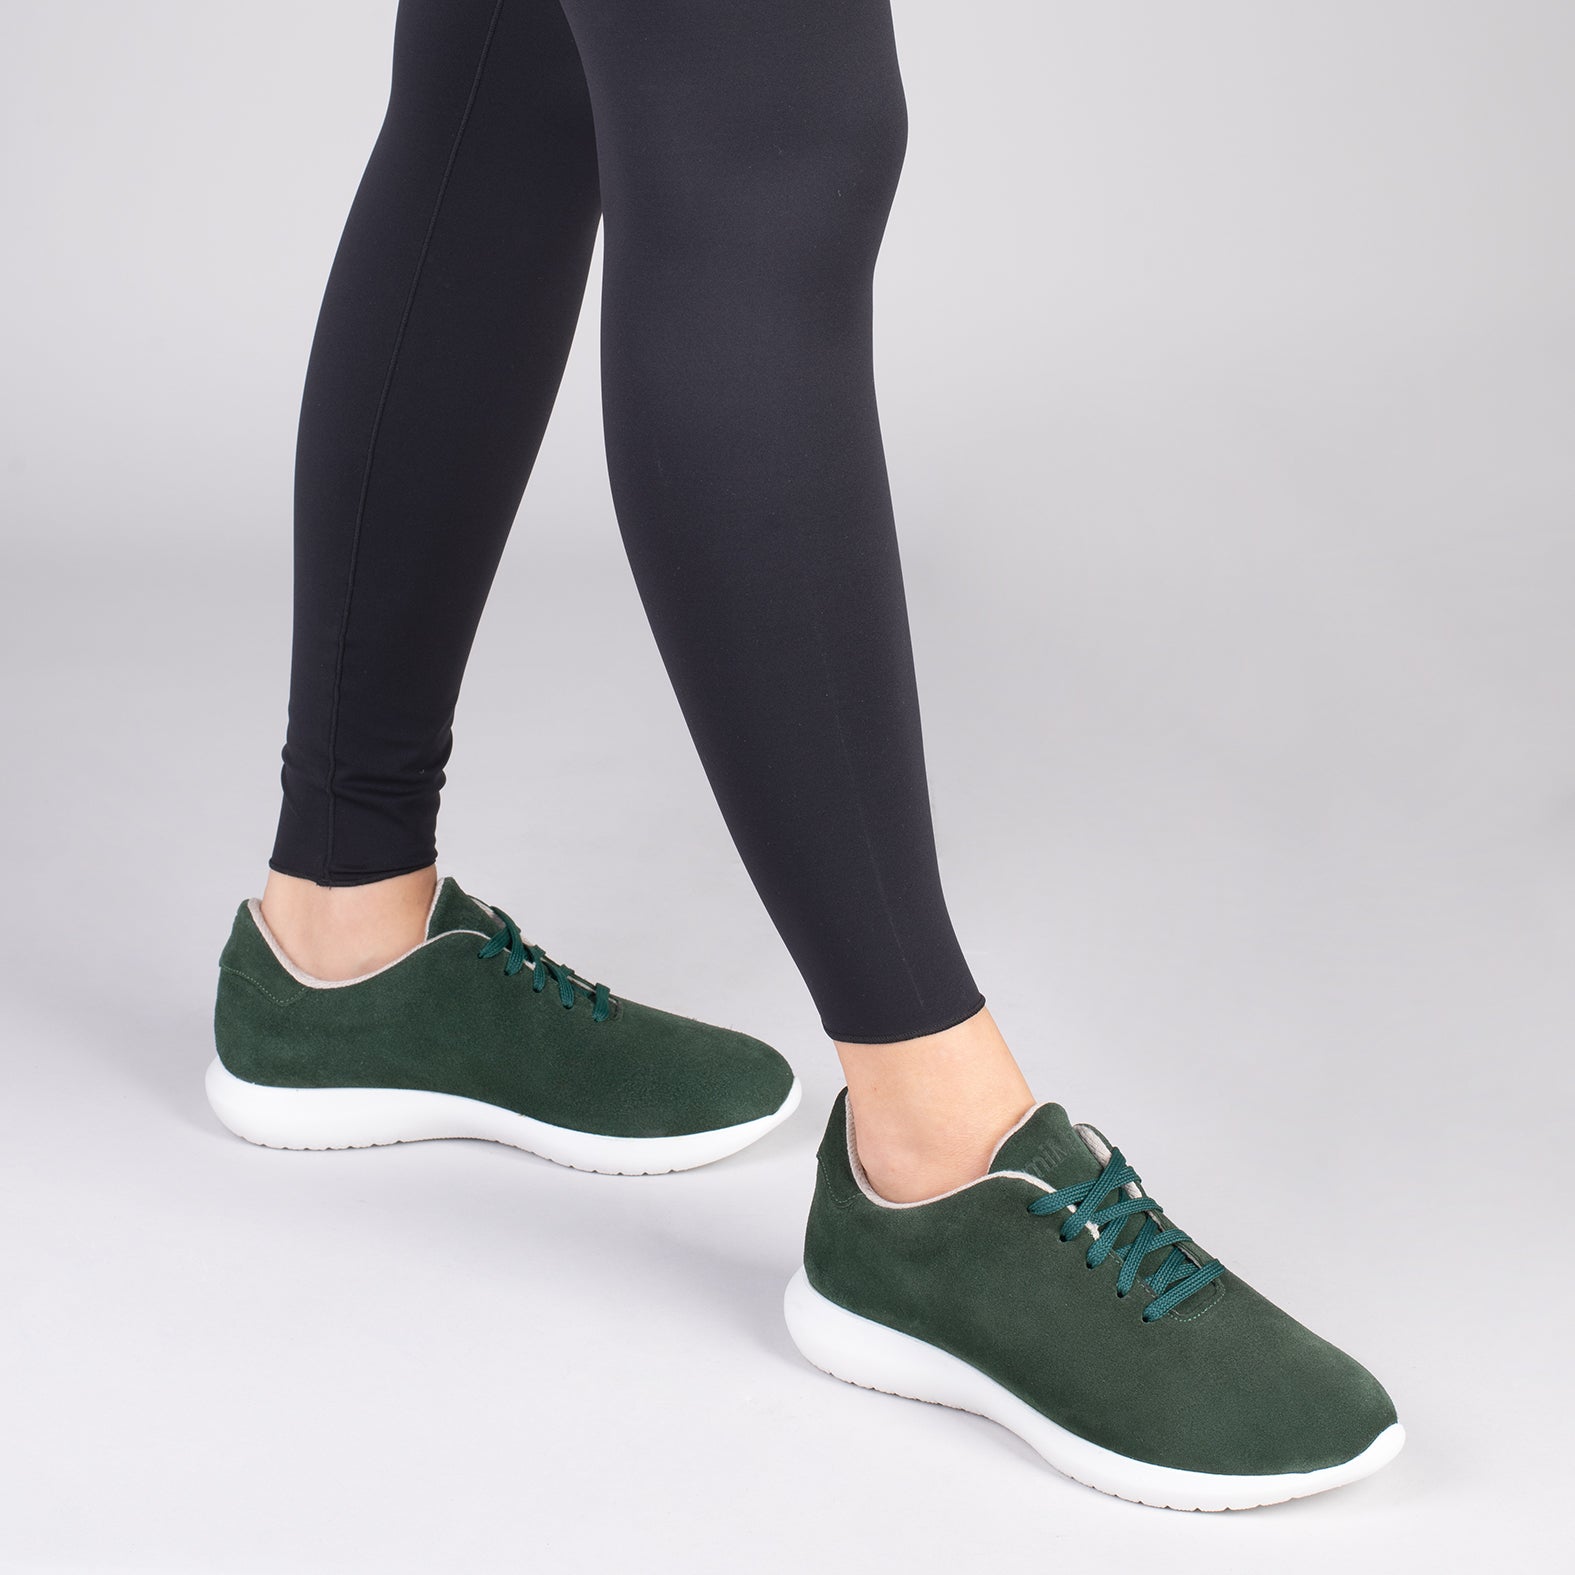 WALK – DARK GREEN comfortable women’s sneakers